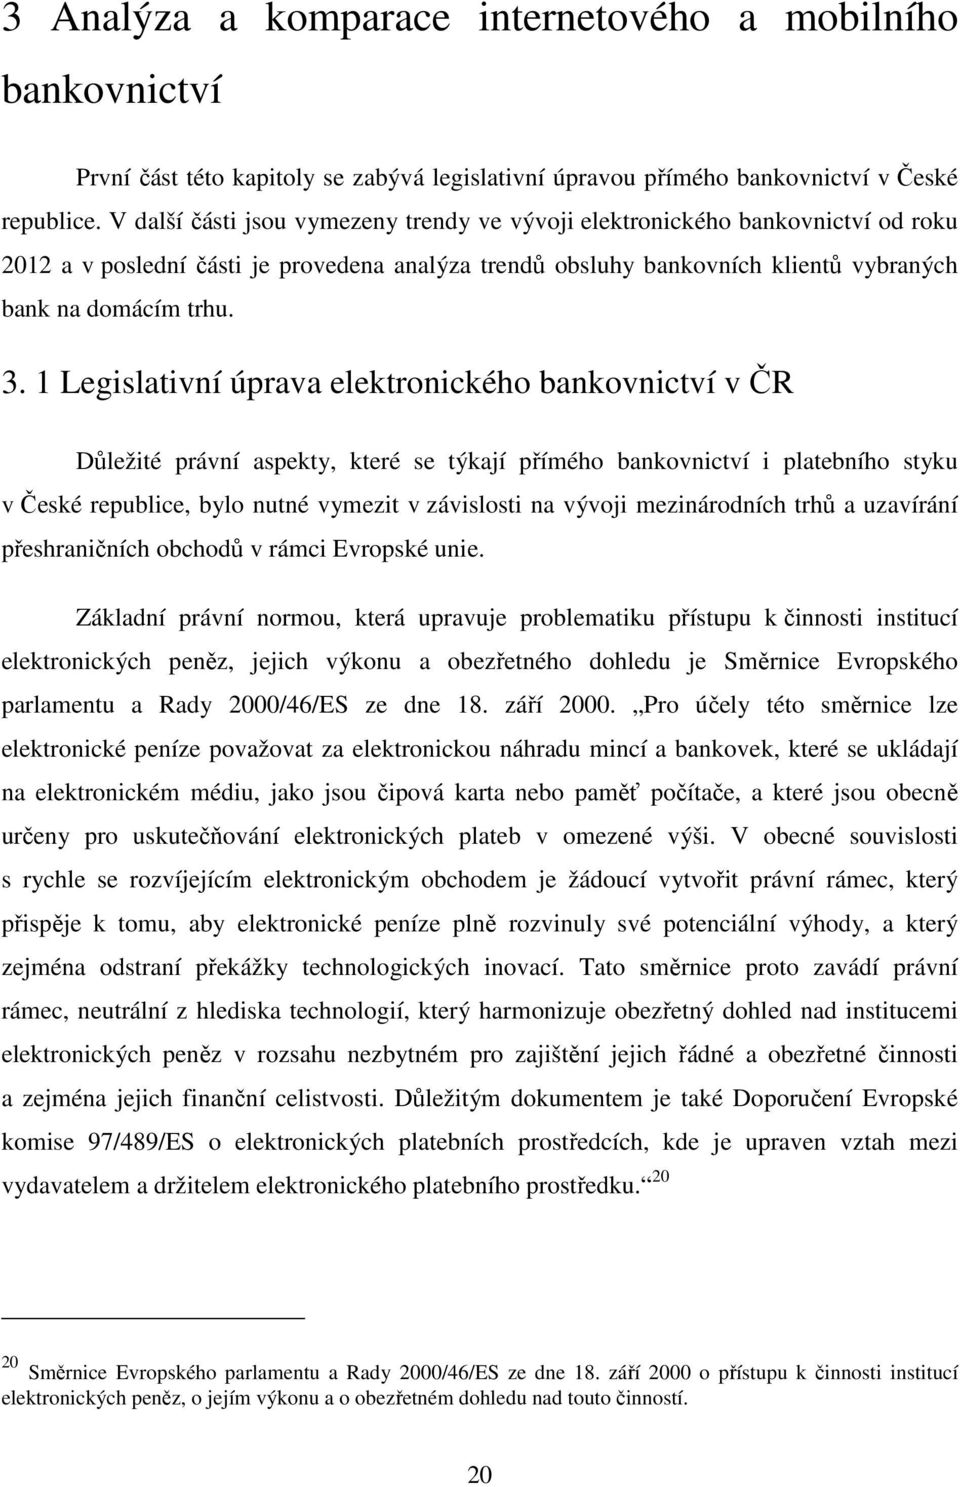 1 Legislativní úprava elektronického bankovnictví v ČR Důležité právní aspekty, které se týkají přímého bankovnictví i platebního styku v České republice, bylo nutné vymezit v závislosti na vývoji